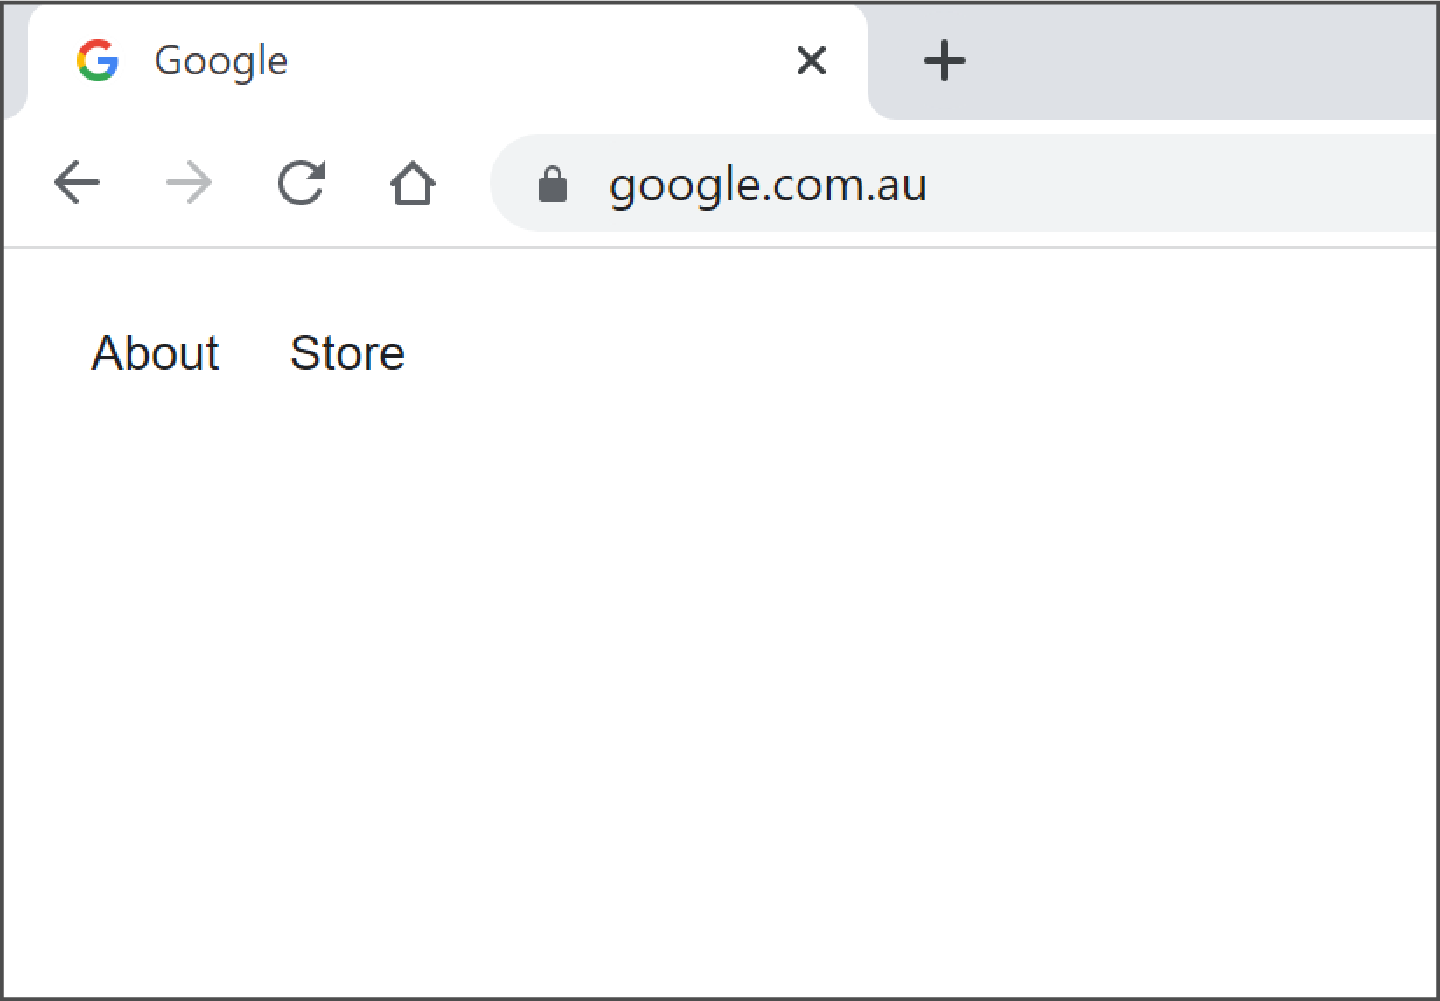 صفحة متصفح ويب مفتوحة مع كتابة google.com.au في شريط العناوين